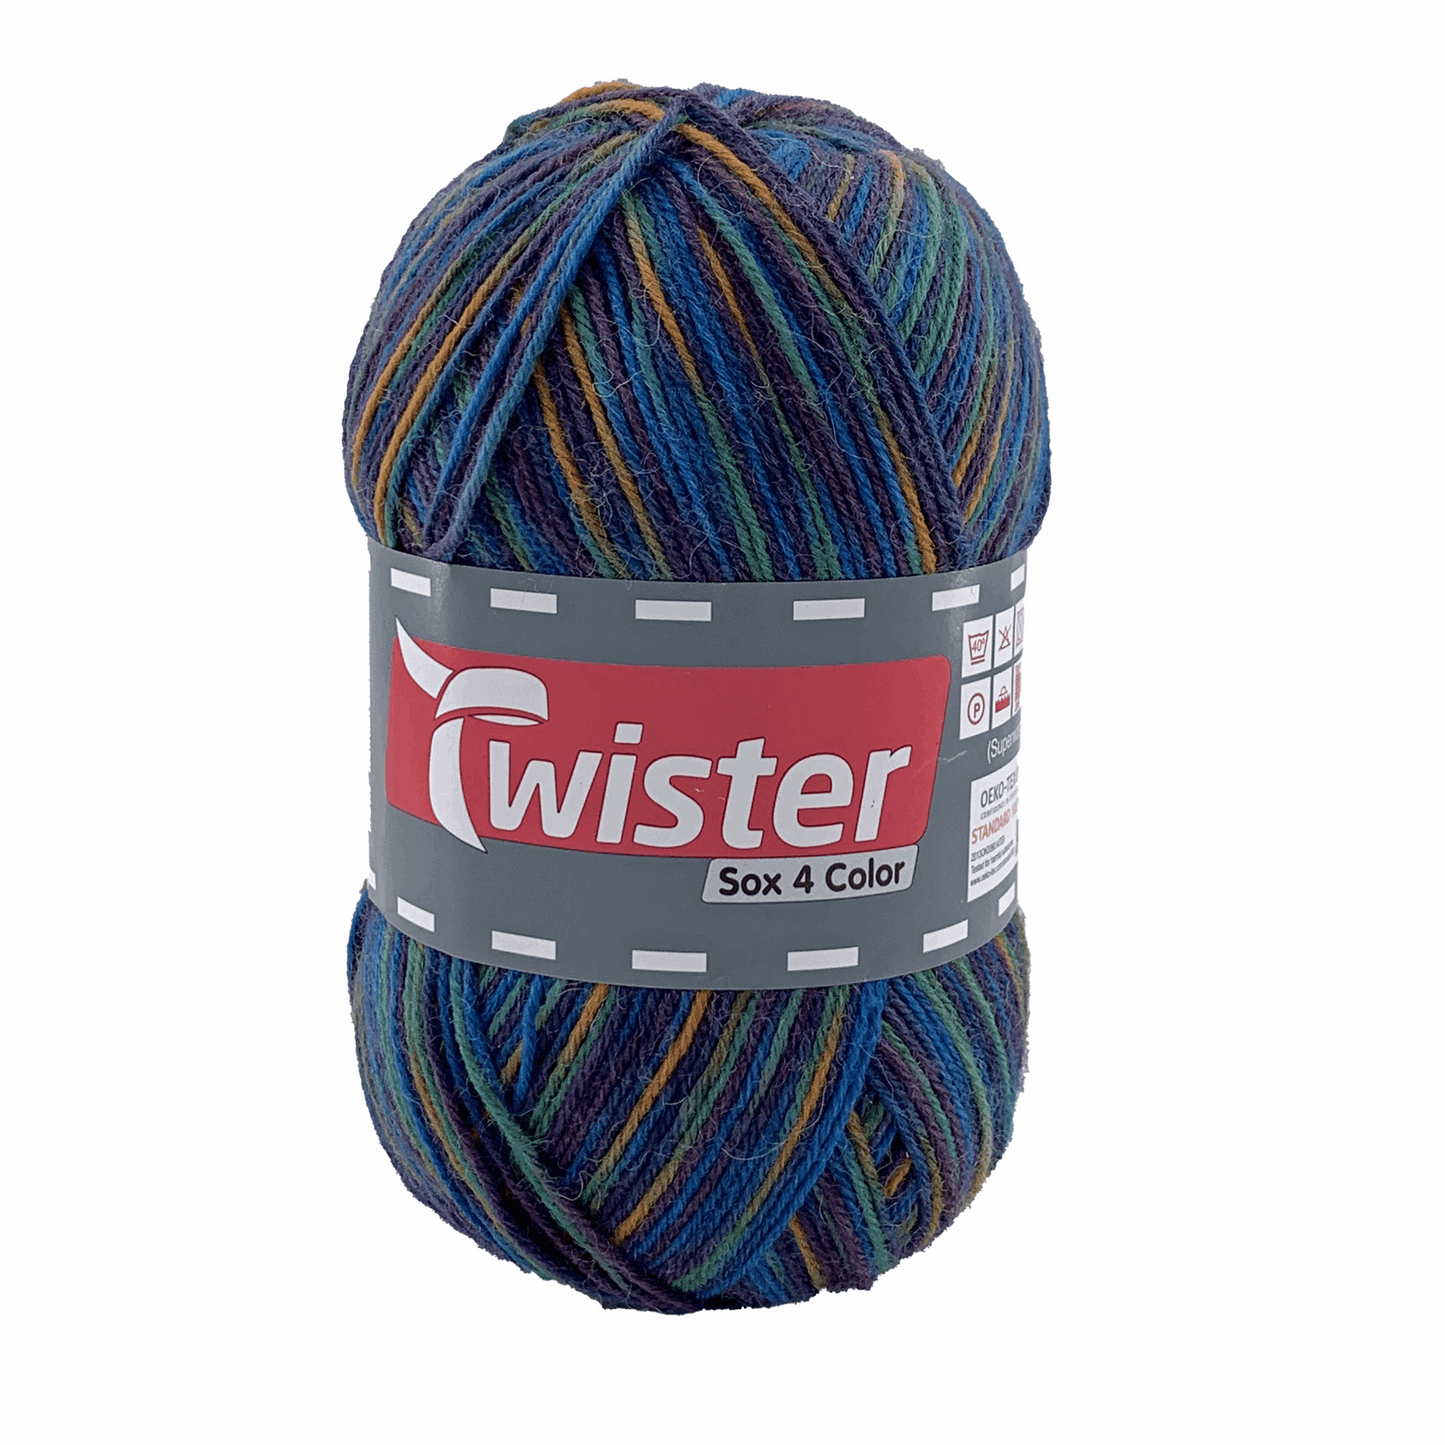 Twister Sox4 Color superwash, tinte multi, 98306, Farbe 187